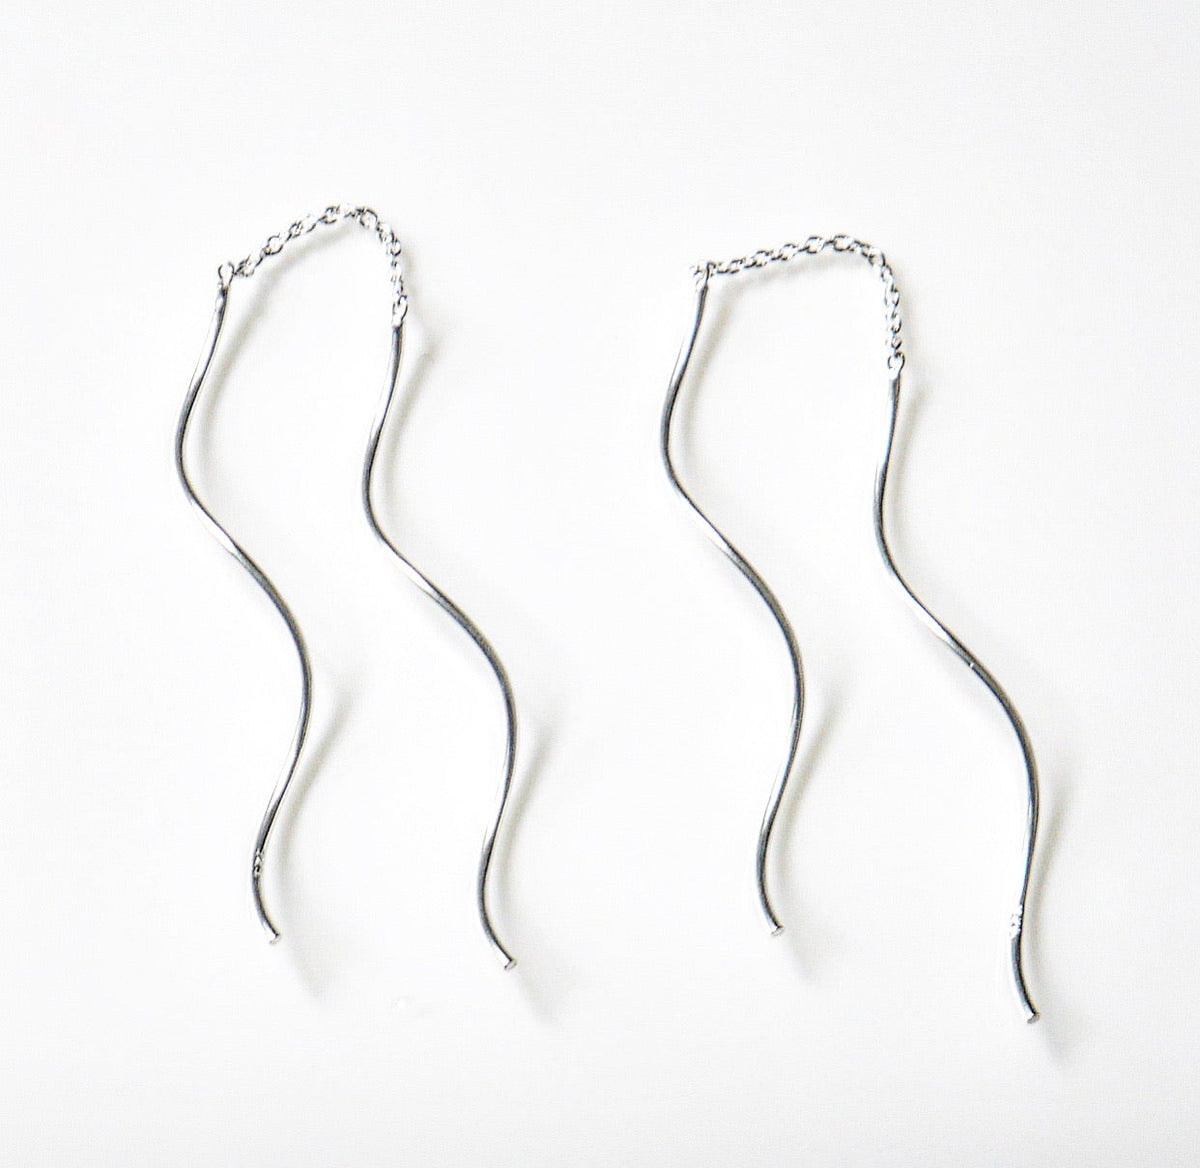 swirl thread earrings threader earrings long thread earrings edgy esrrings jewelry 2020 jewelry store in miami 